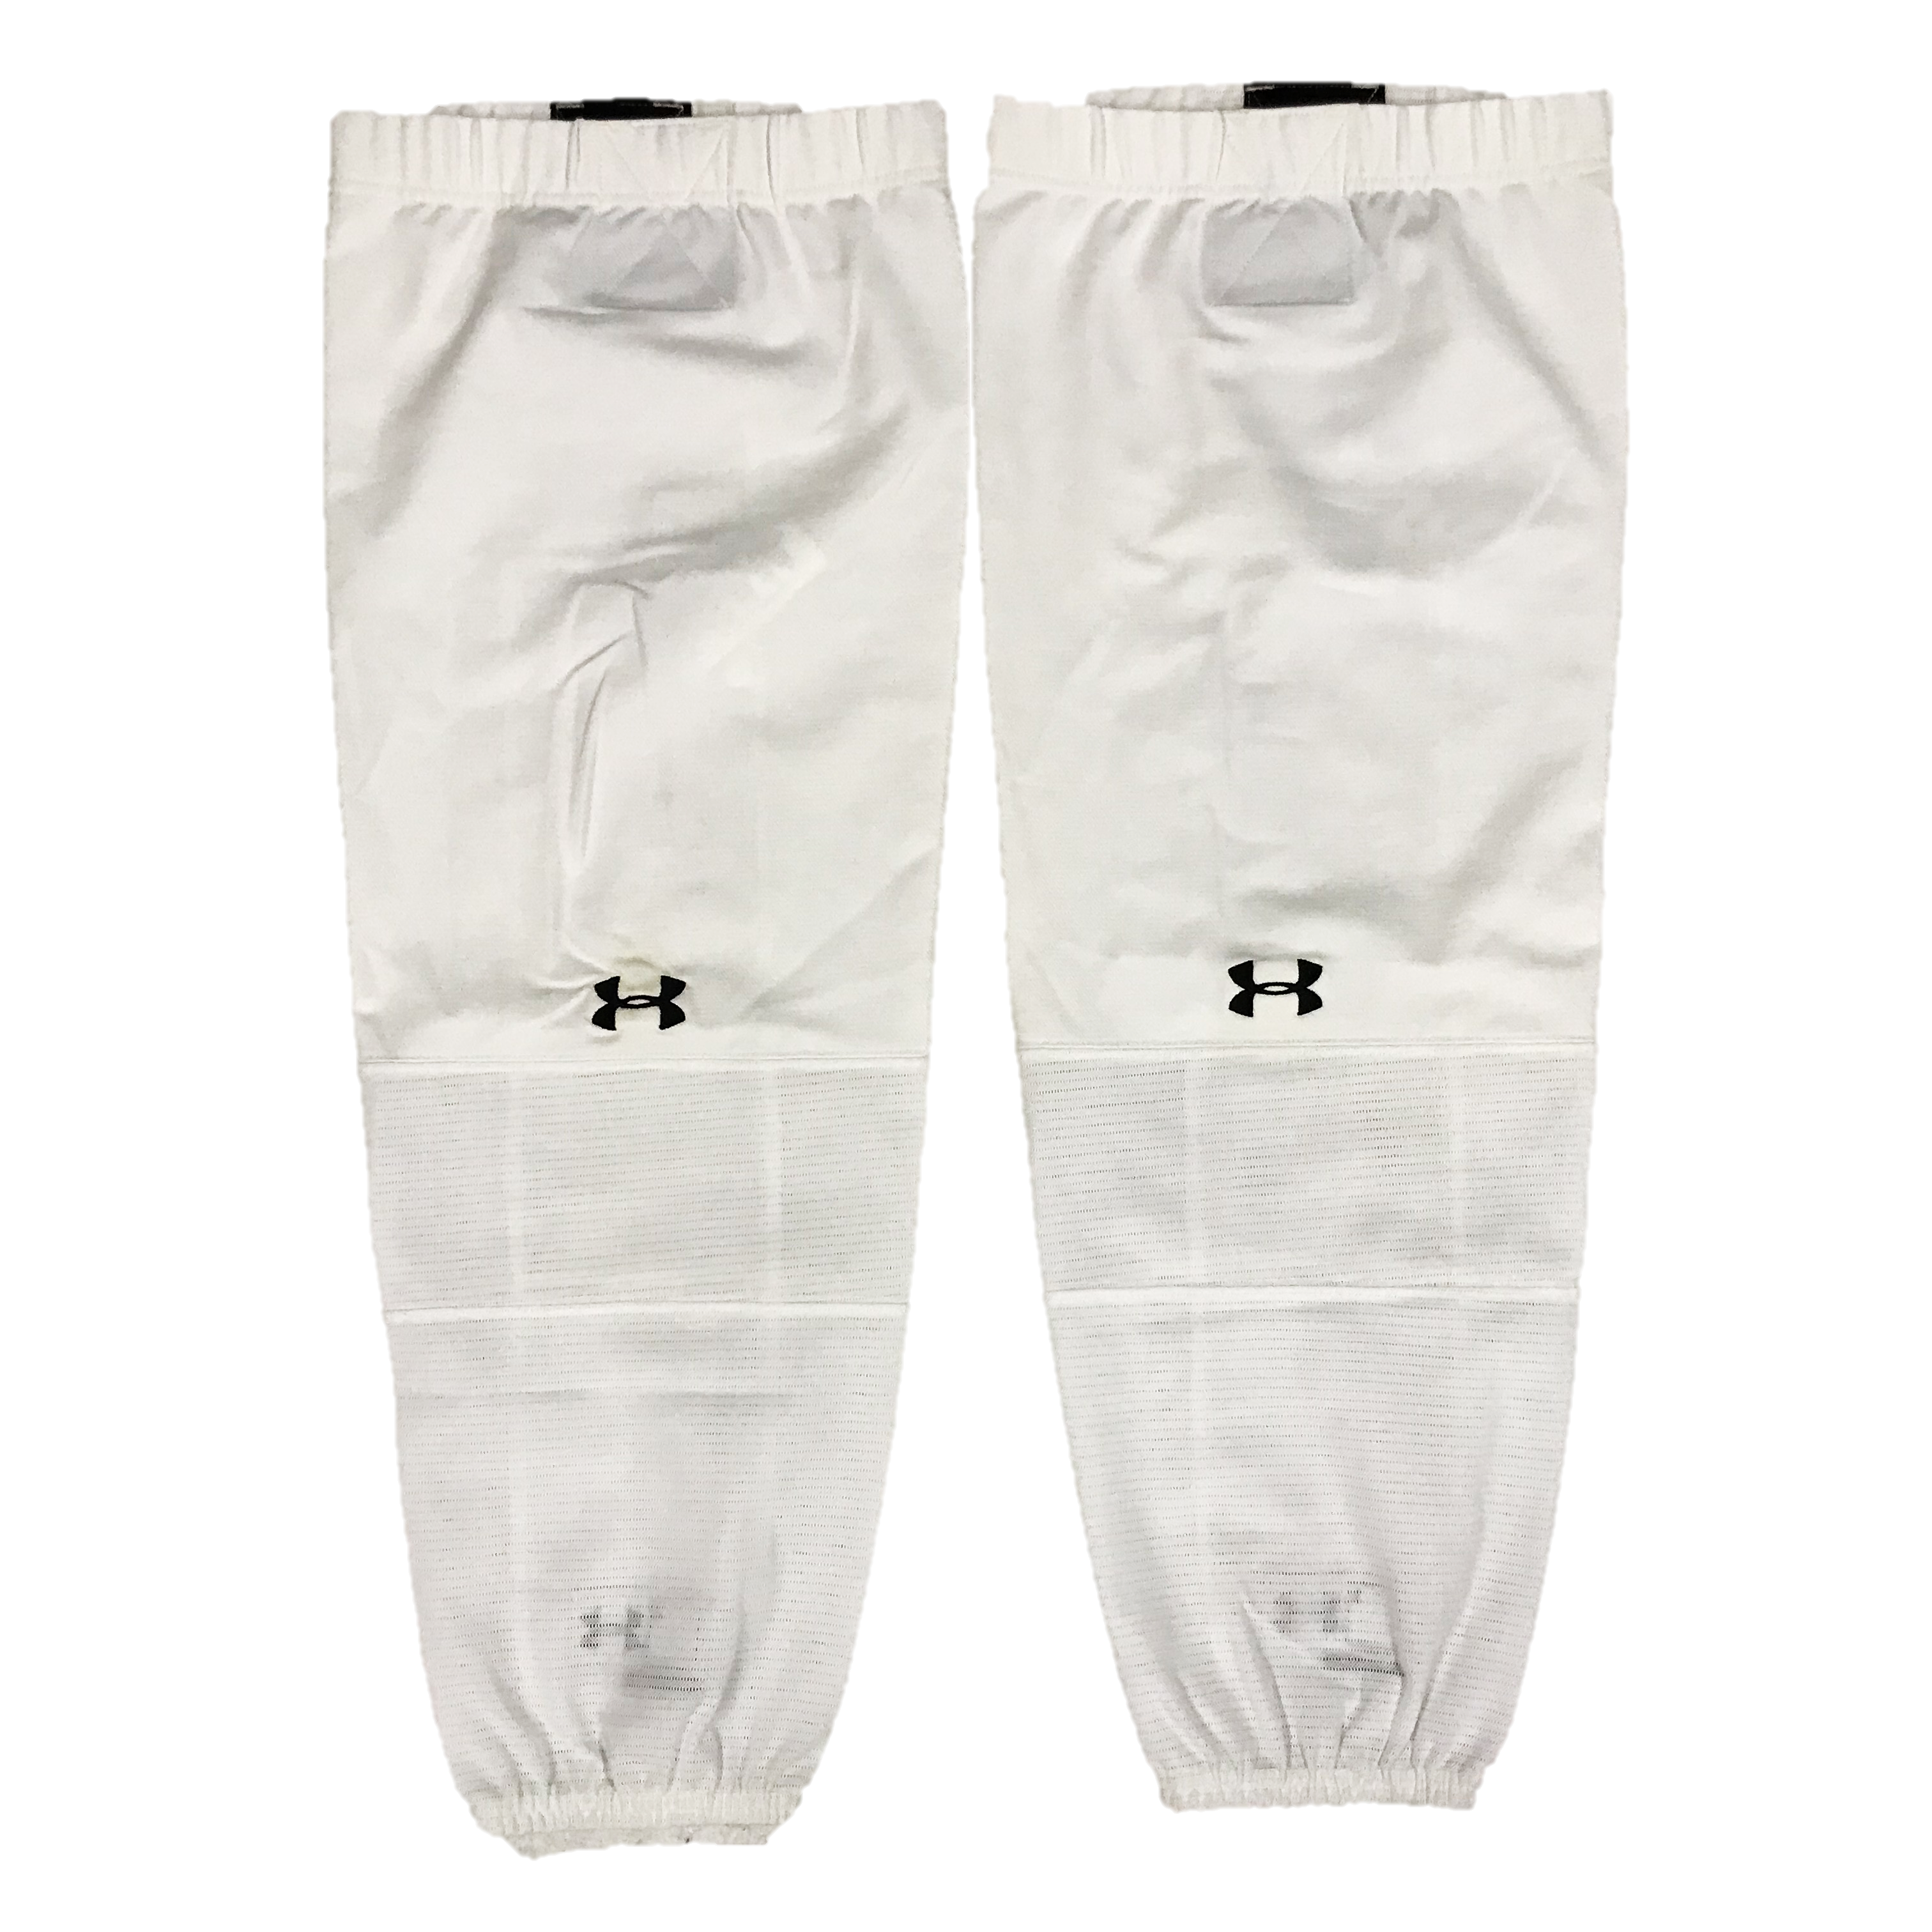 white under armour socks